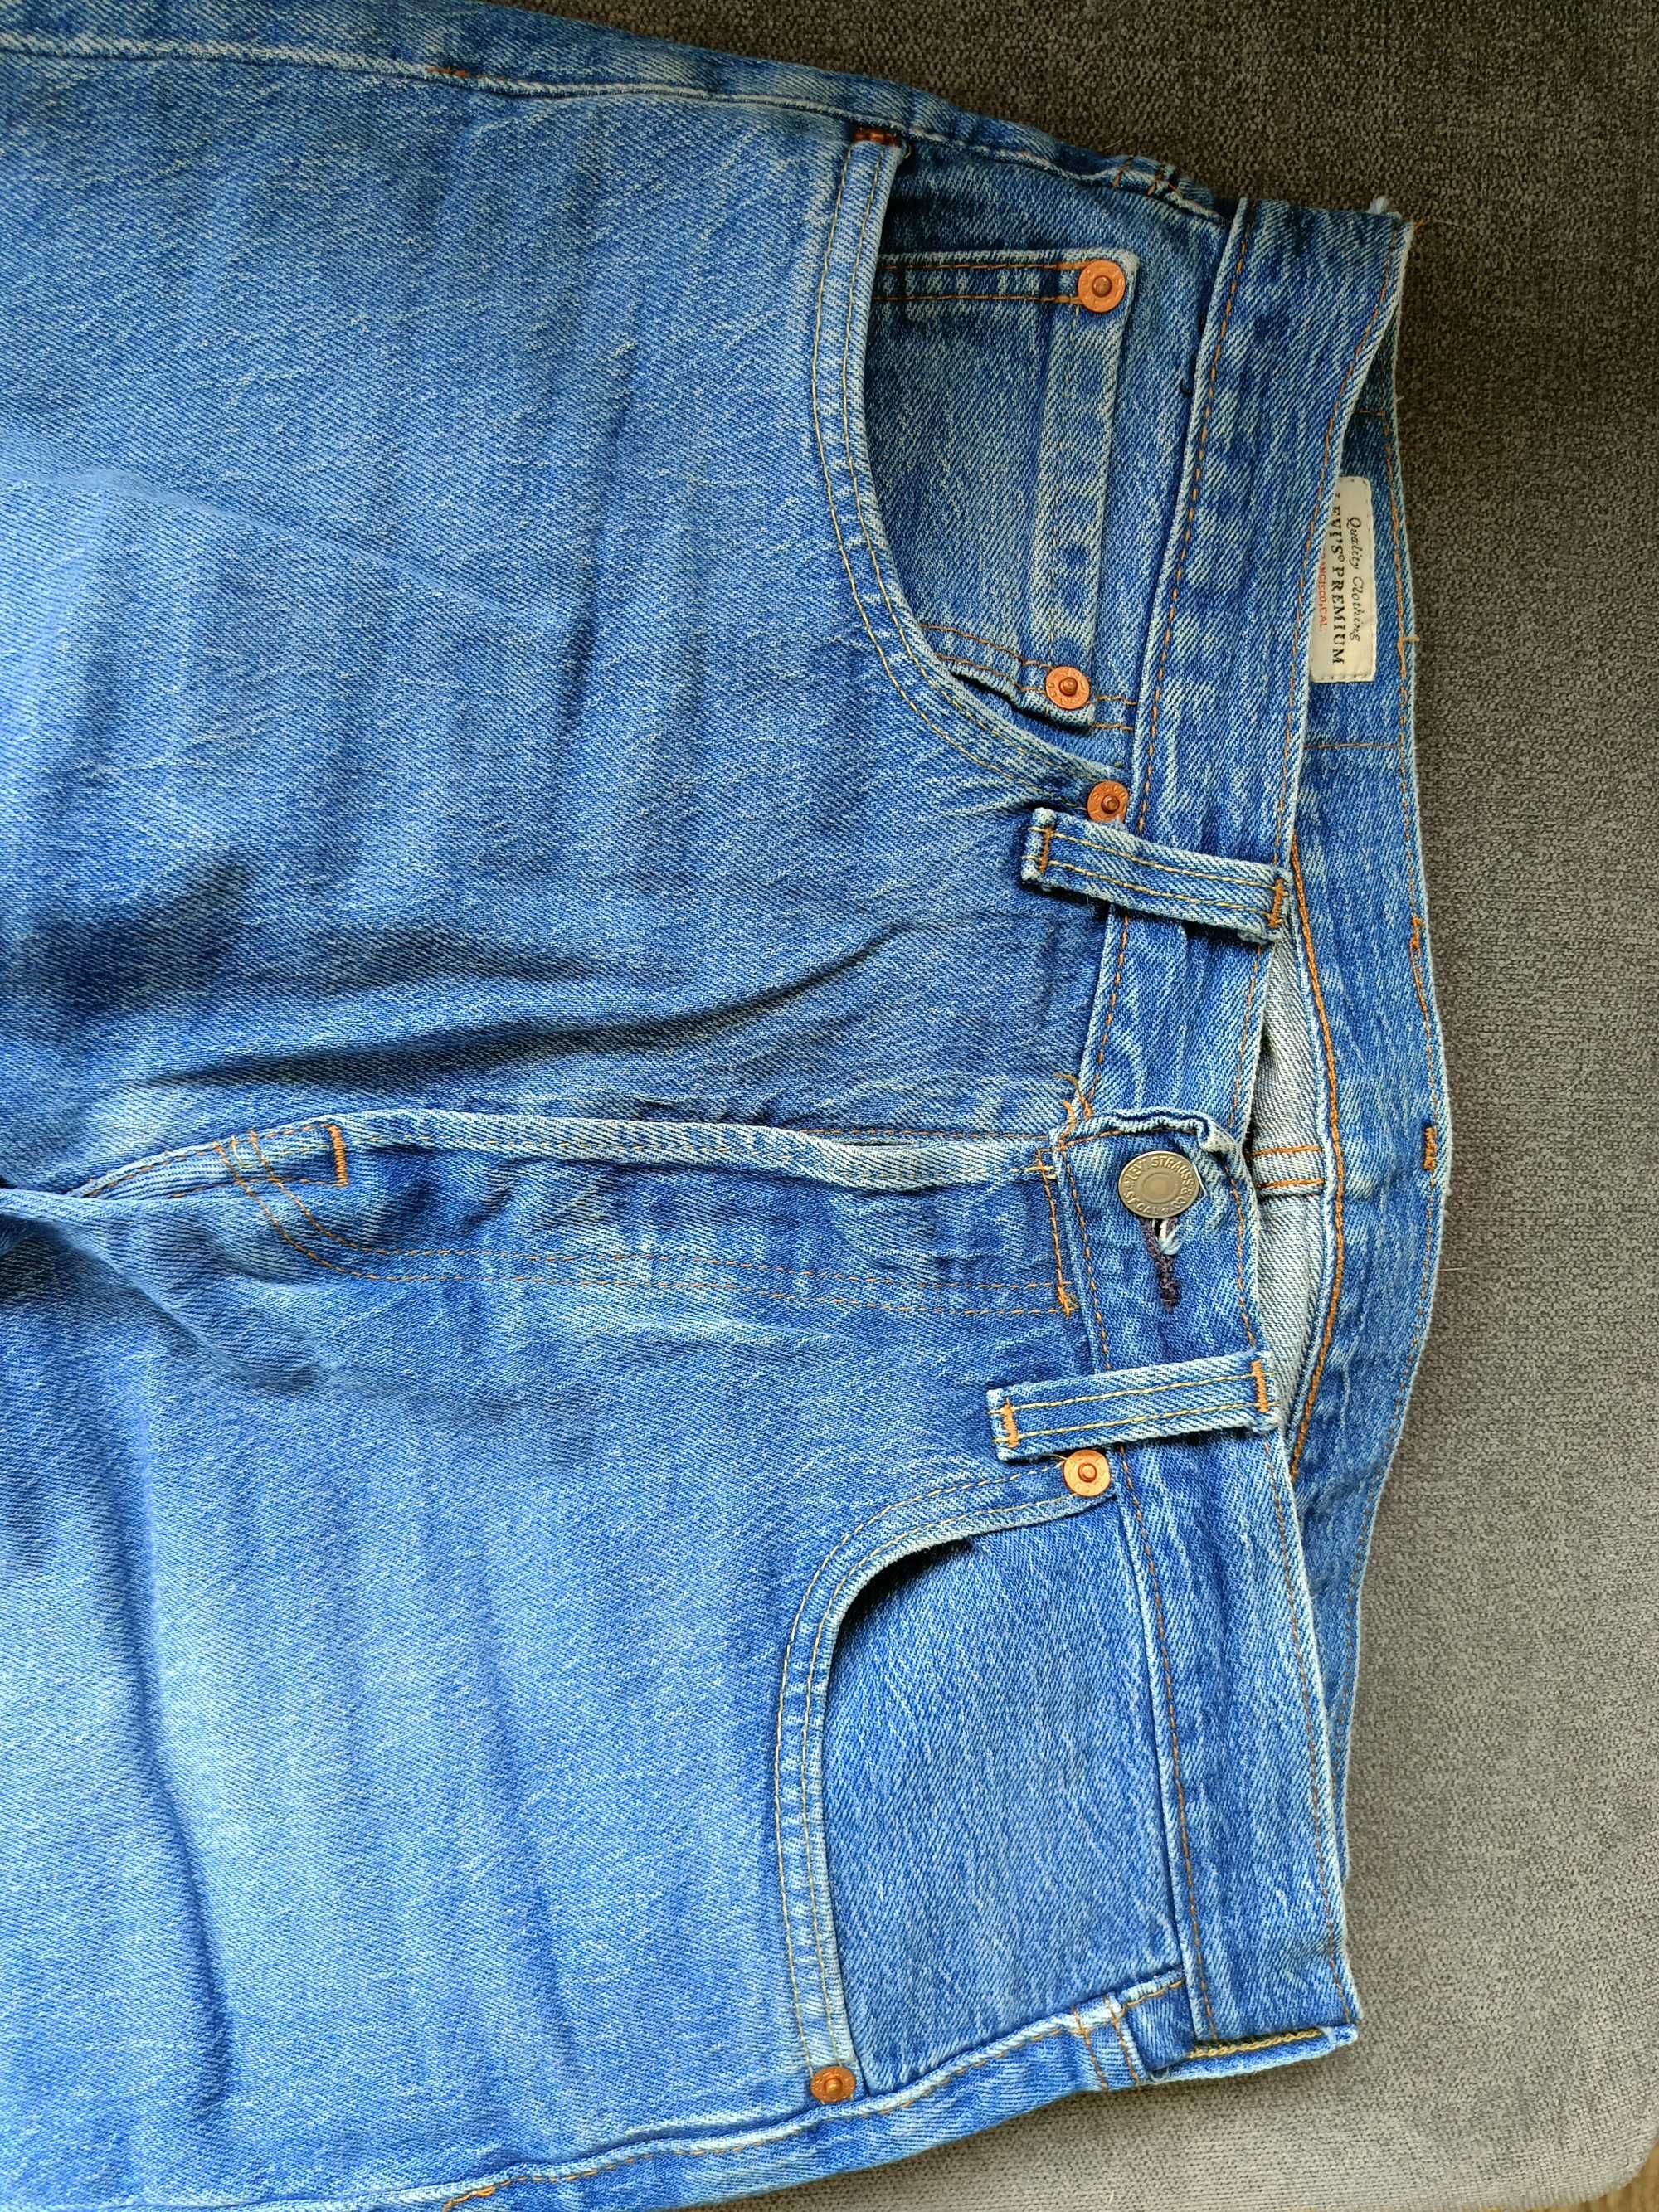 Spodnie jeansowe Levi's 501 31/30